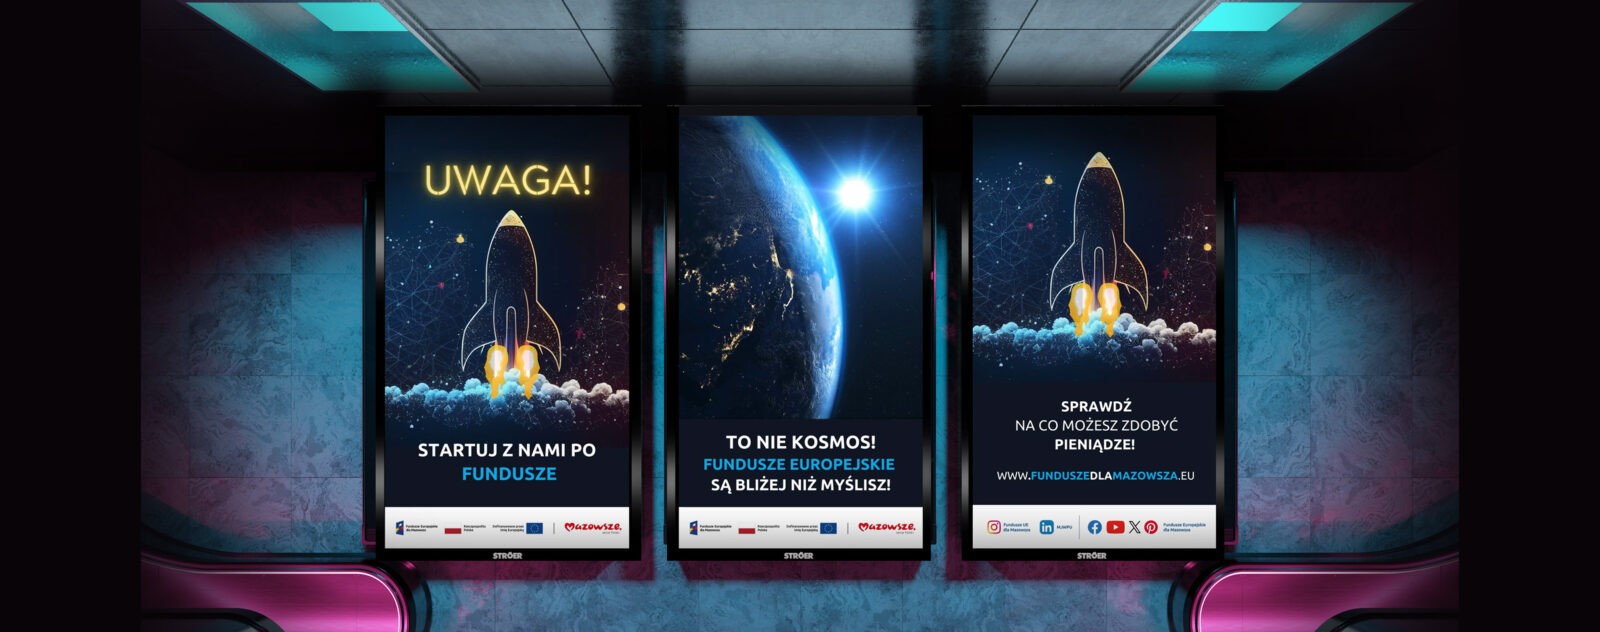 Grafika przedstawia wizualizację reklam w metrze warszawskim, na trzech panelach widnieją rakiety, planeta Ziemia i napisy "startuj z nami po fundusze.